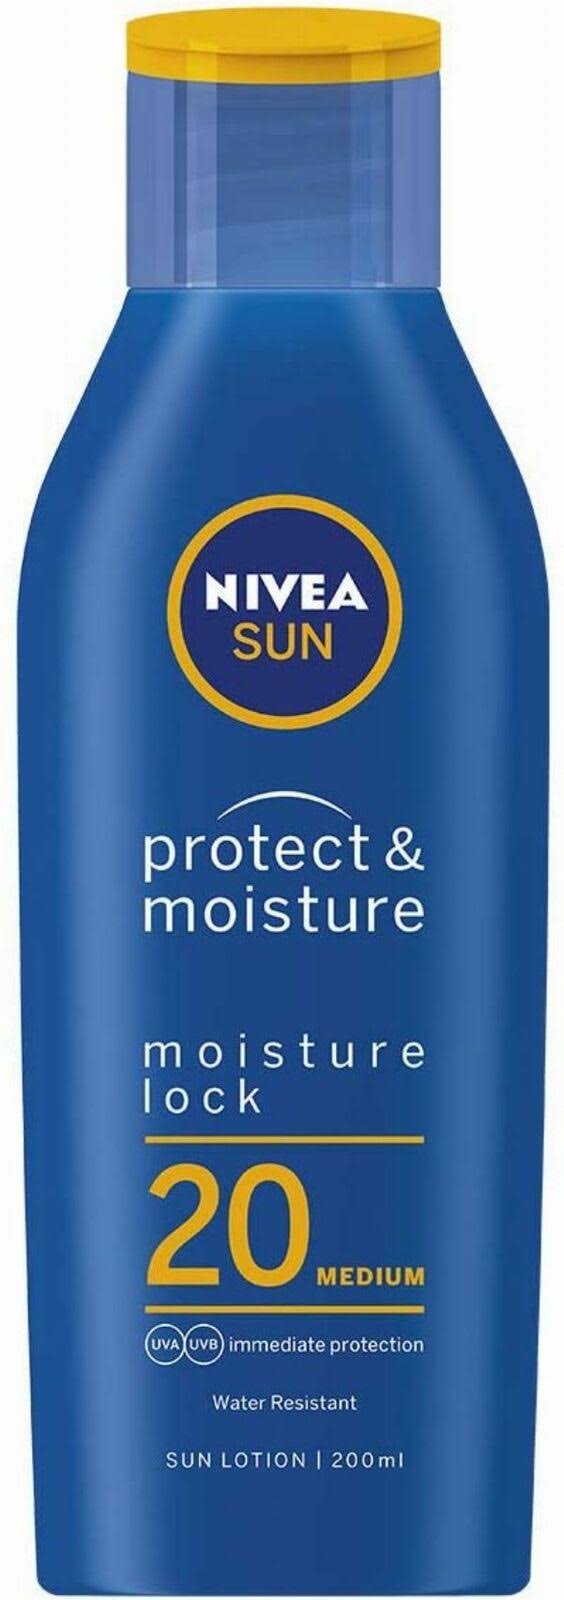 NIVEA Protect and Moisture Sun Lotion - SPF20, 200ml